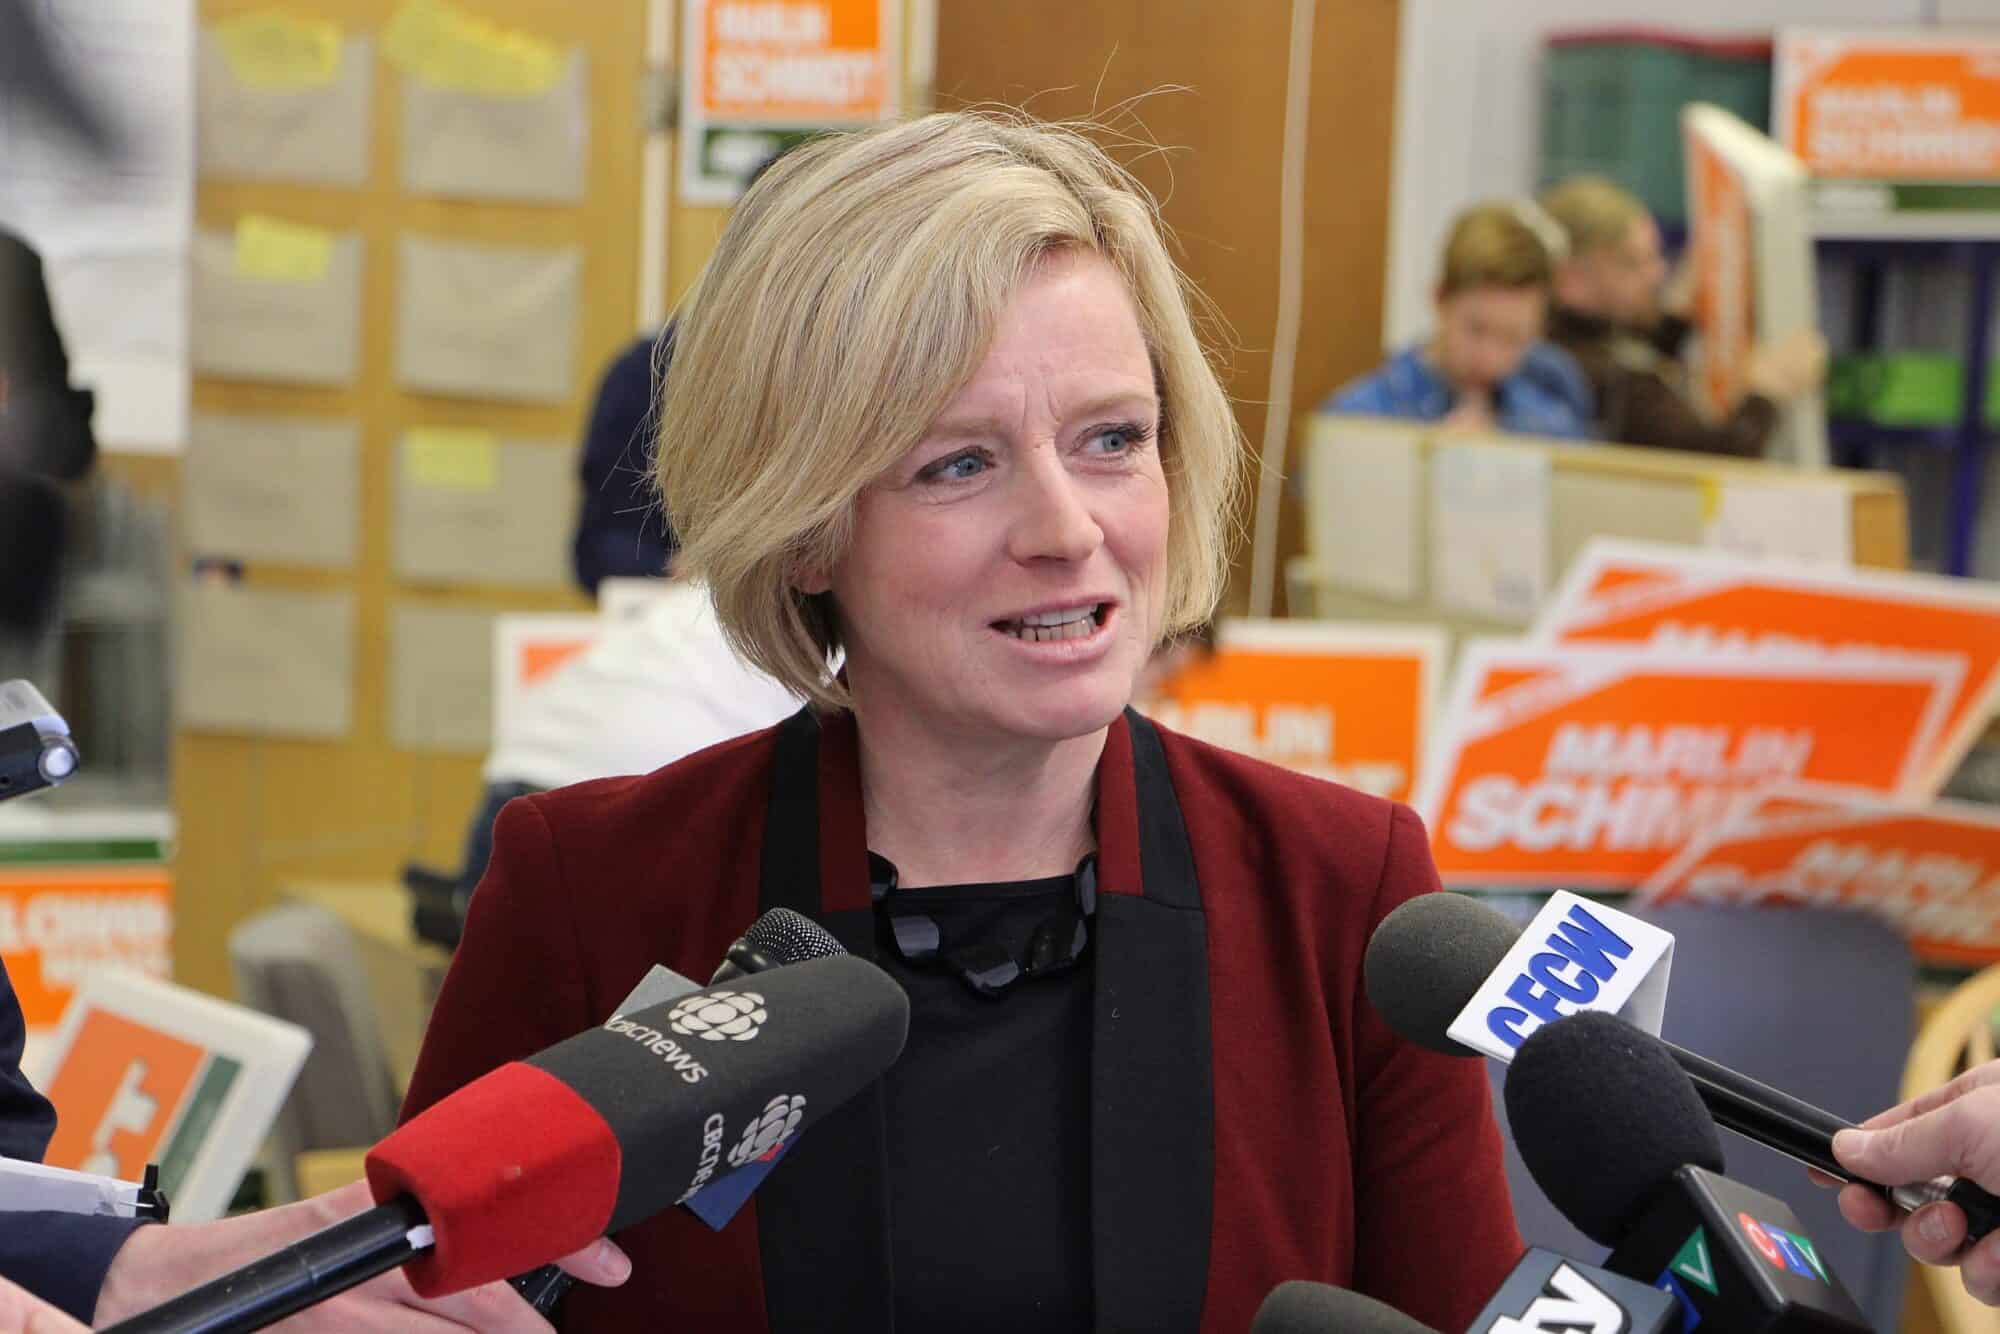 Alberta NDP leader Rachel Notley during a media scrum.